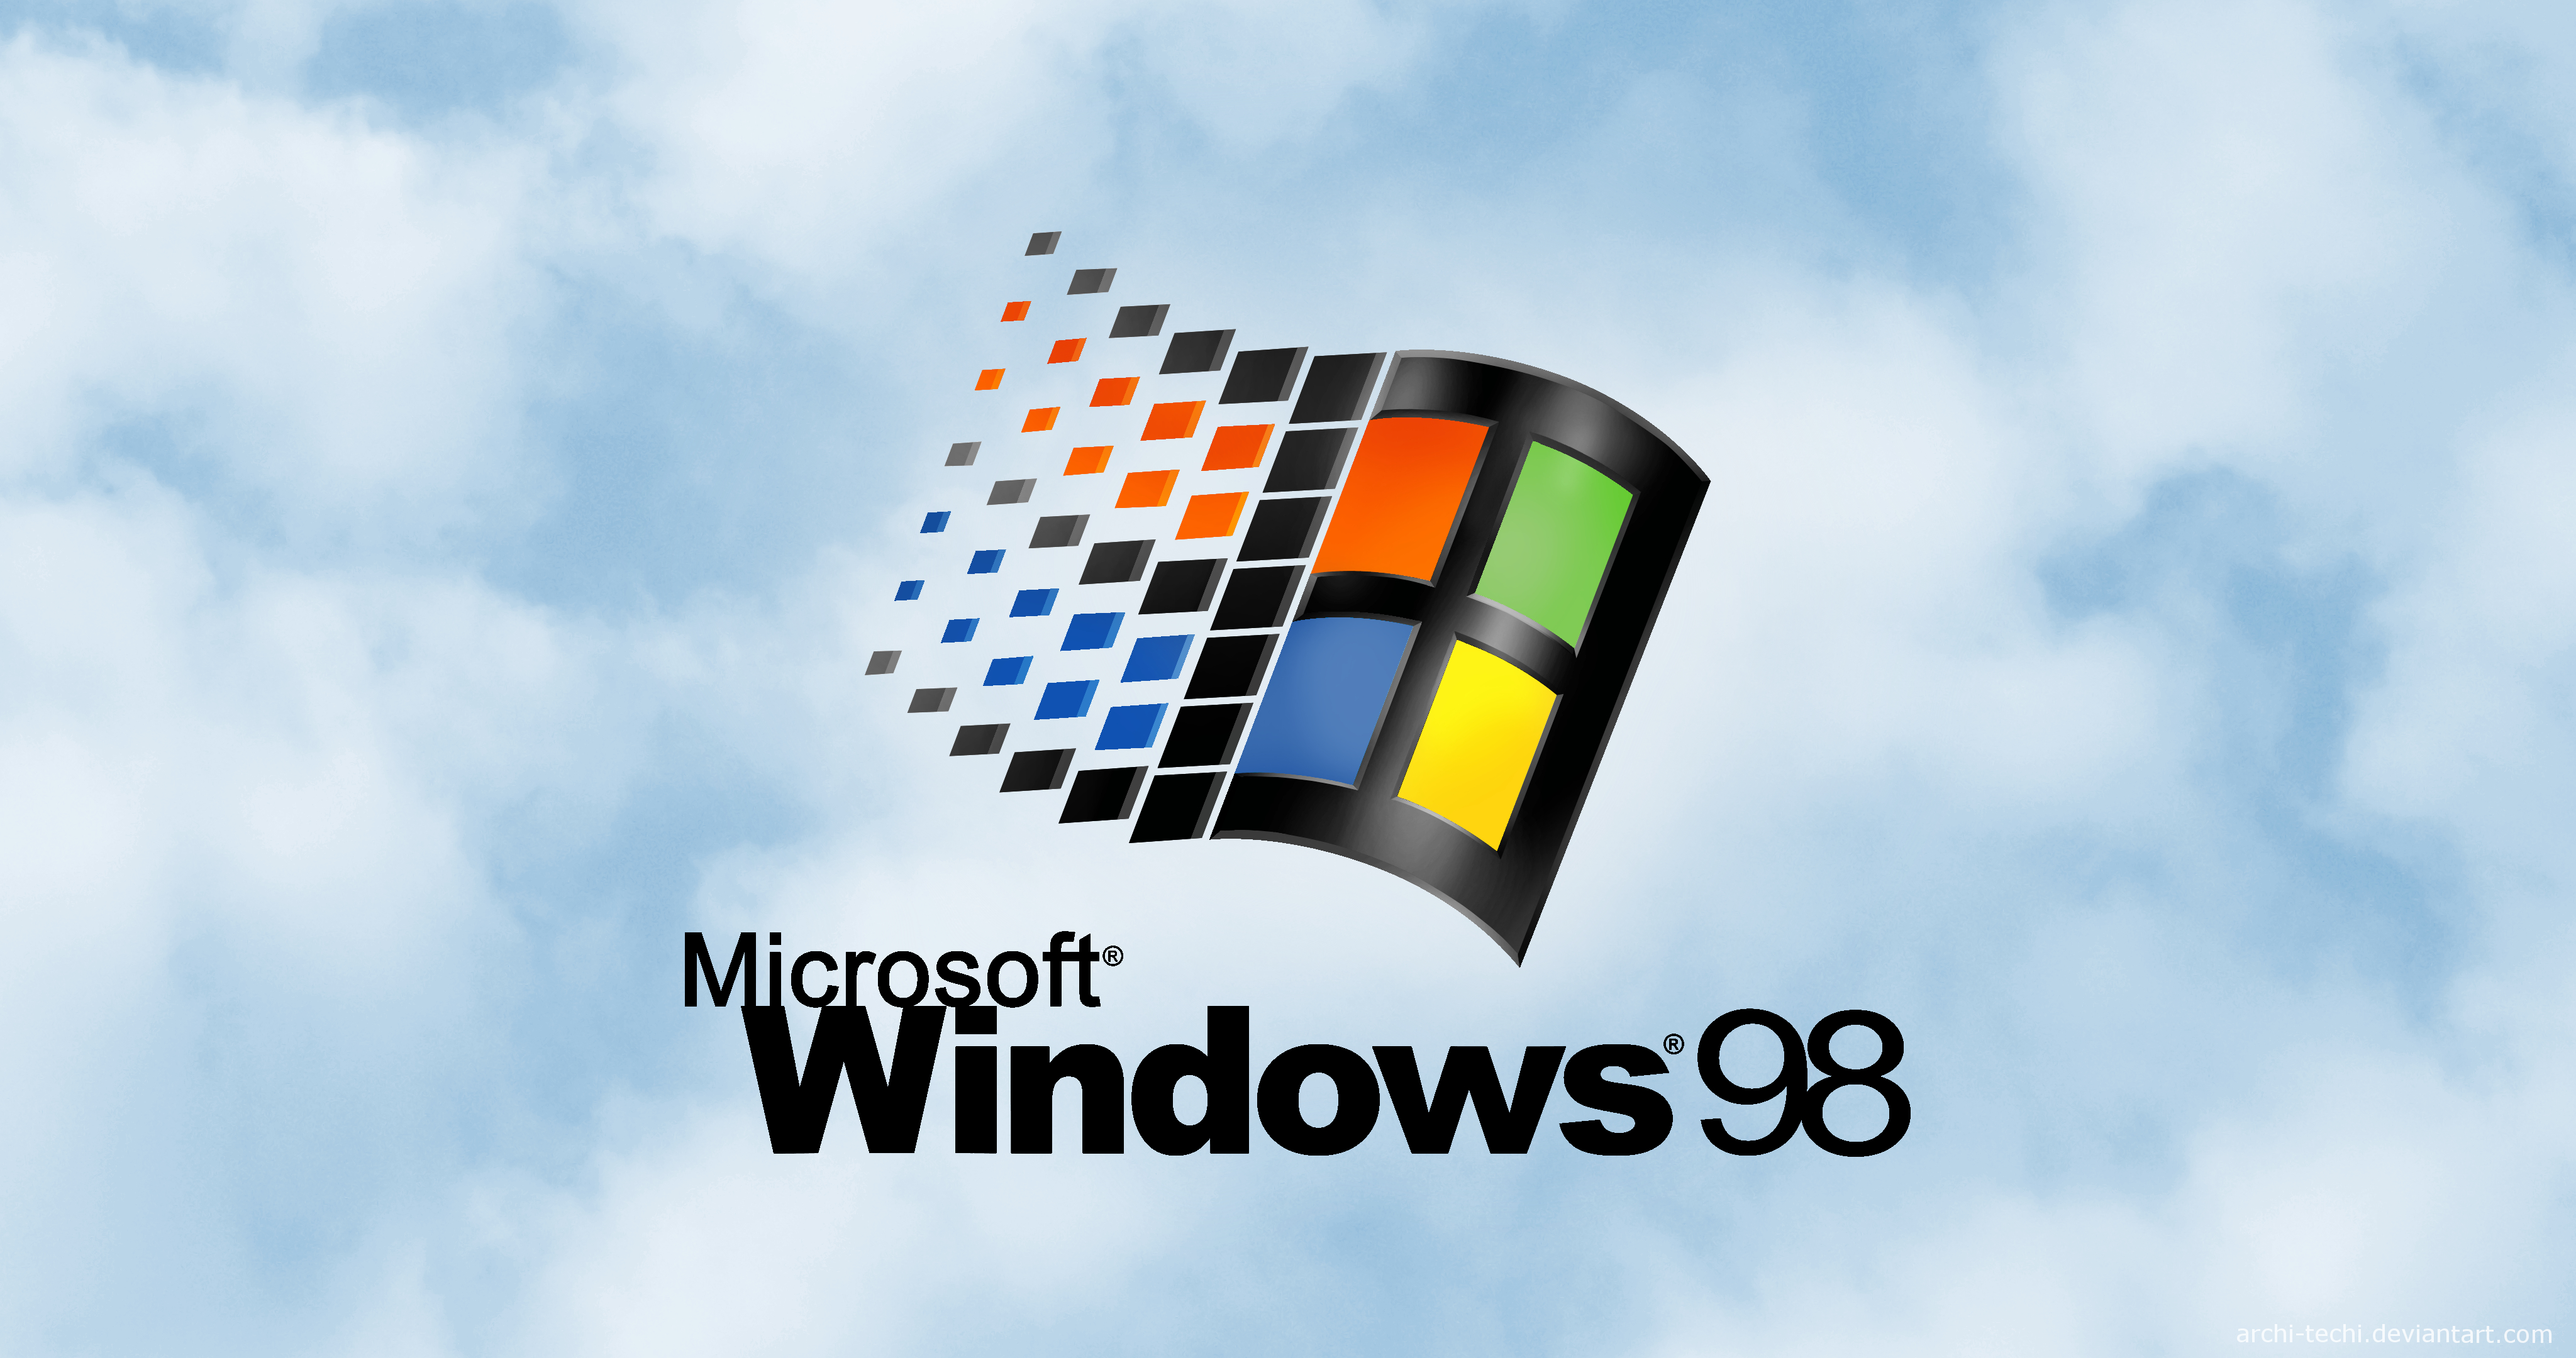 Khi khởi động máy tính, màn hình khởi động là thứ đầu tiên bạn thấy. Và bây giờ, với Windows 98 Remastered, bạn có thể tùy chỉnh màn hình khởi động theo ý thích của mình. Hãy để nó trở thành một khung cảnh thú vị cho những trải nghiệm mới mẻ đi đến.